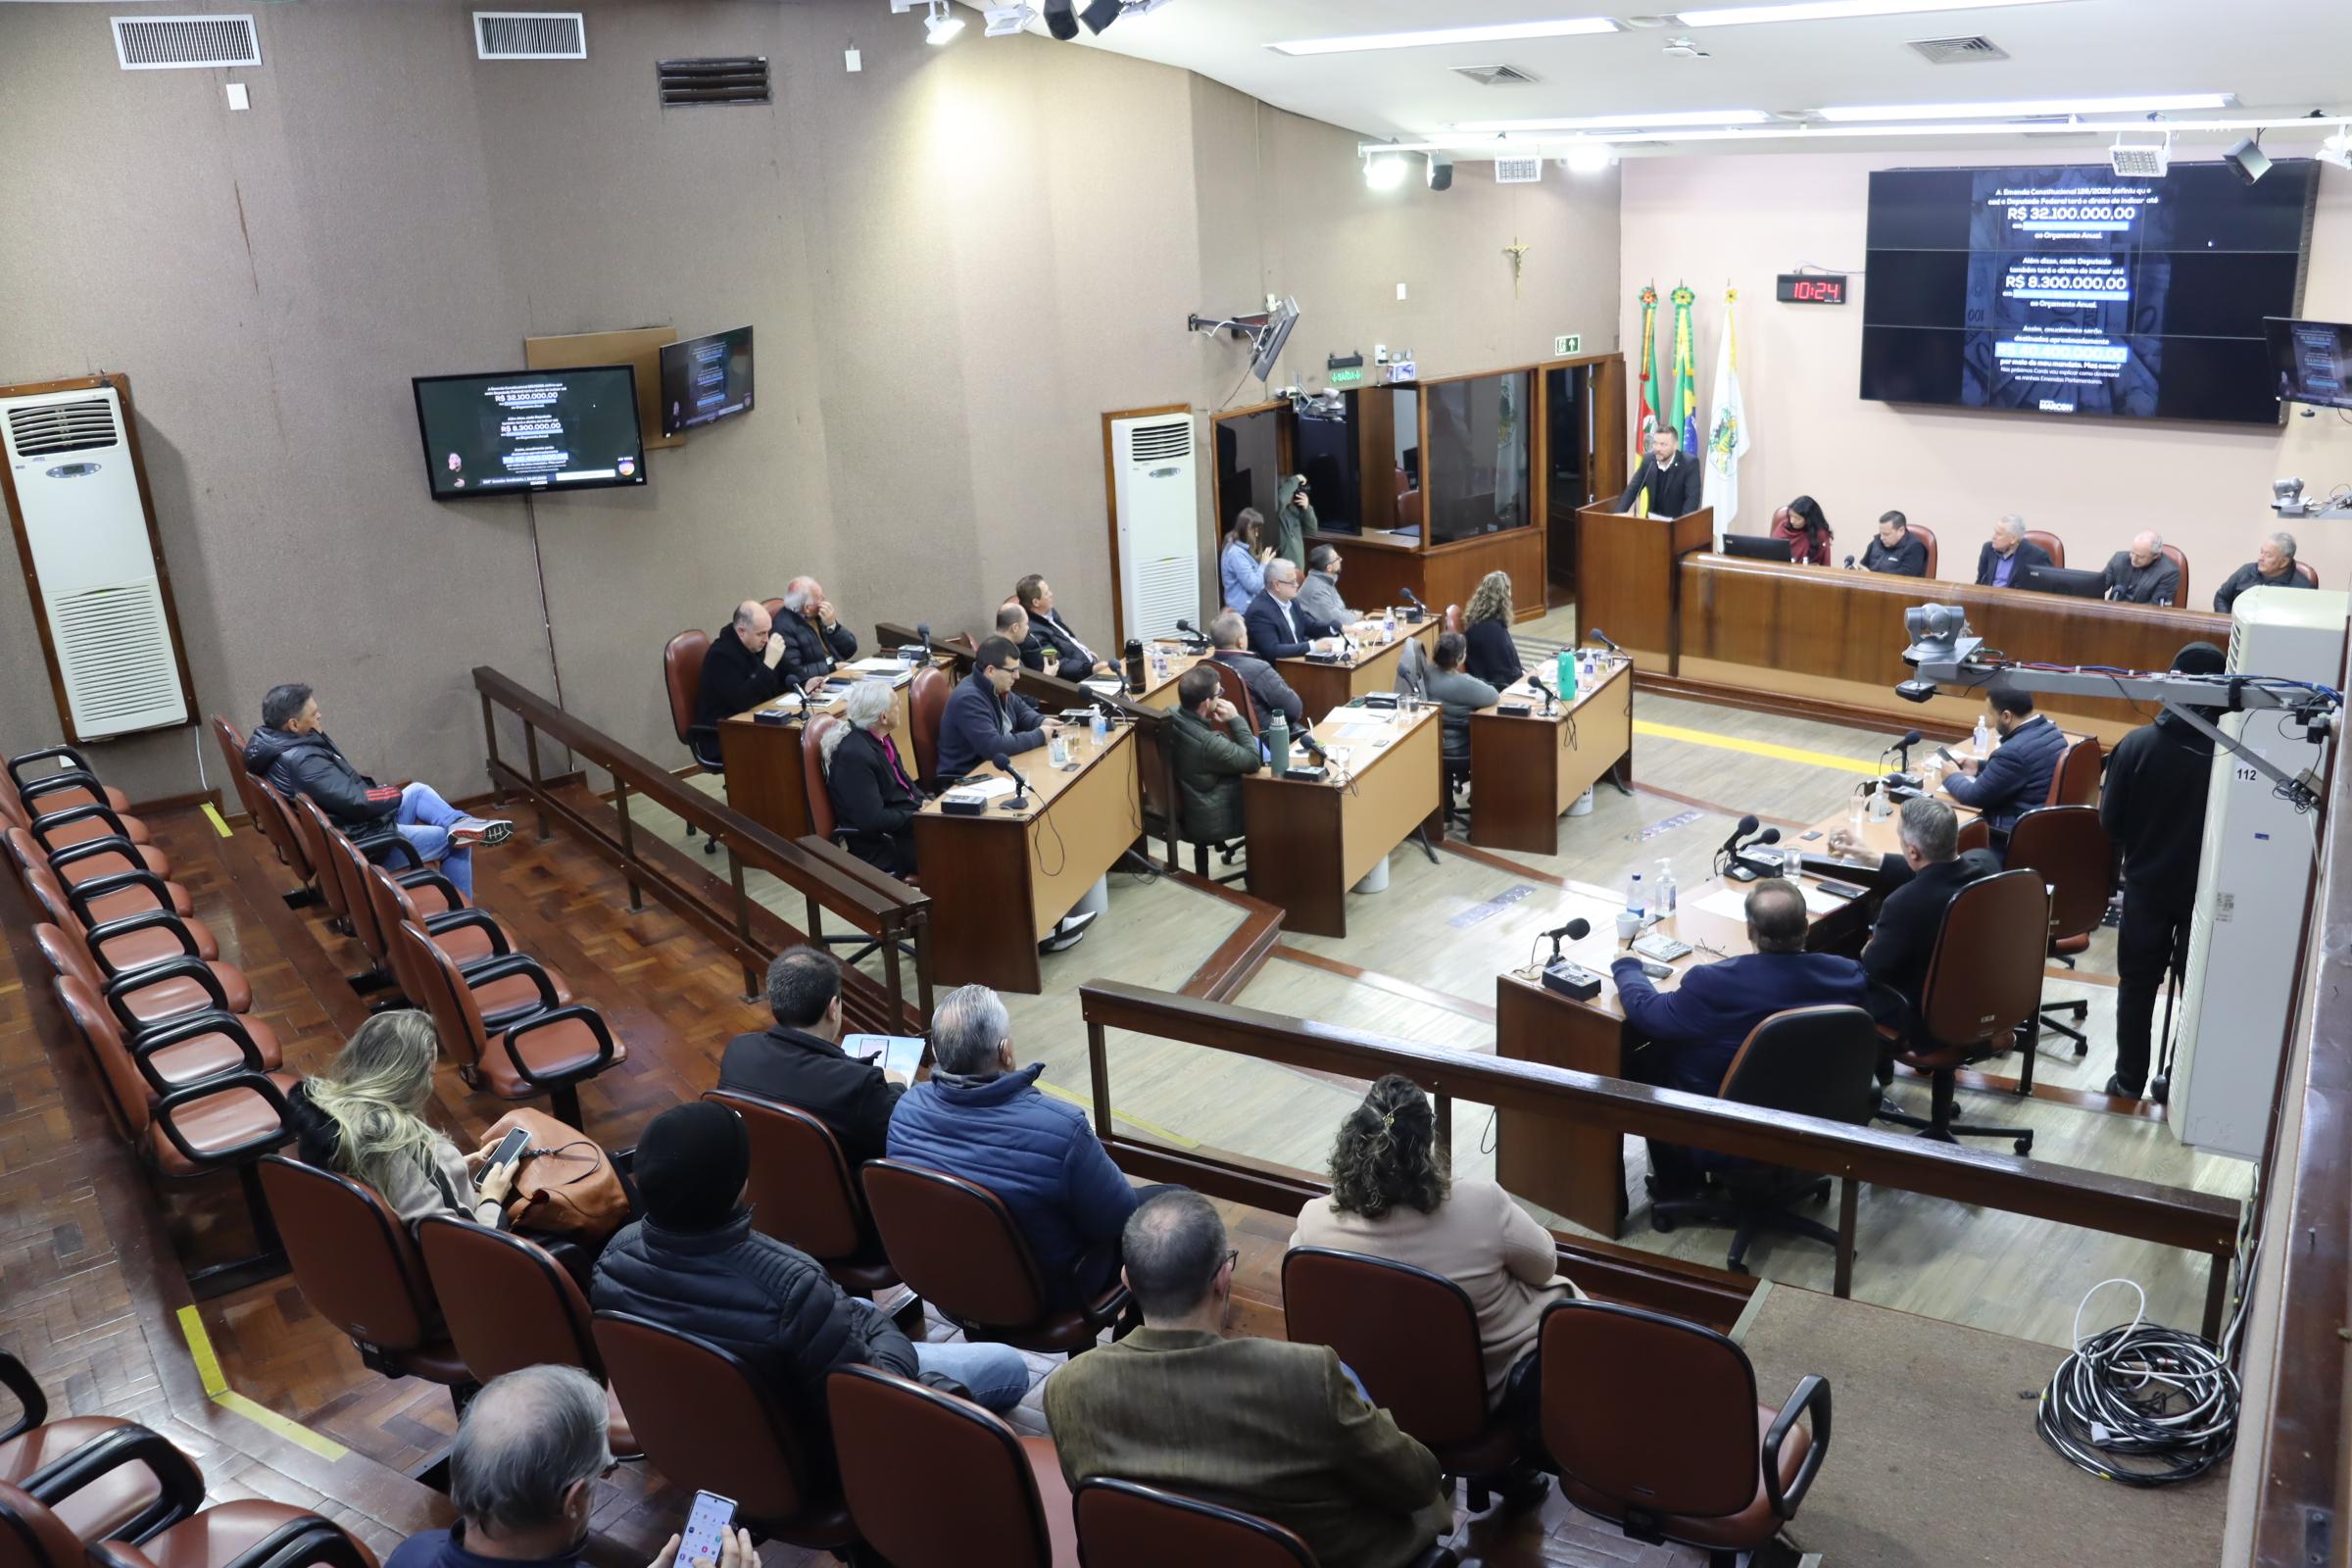 Adiada por três dias a votação pela aquisição de imóvel para uso do Procon Caxias